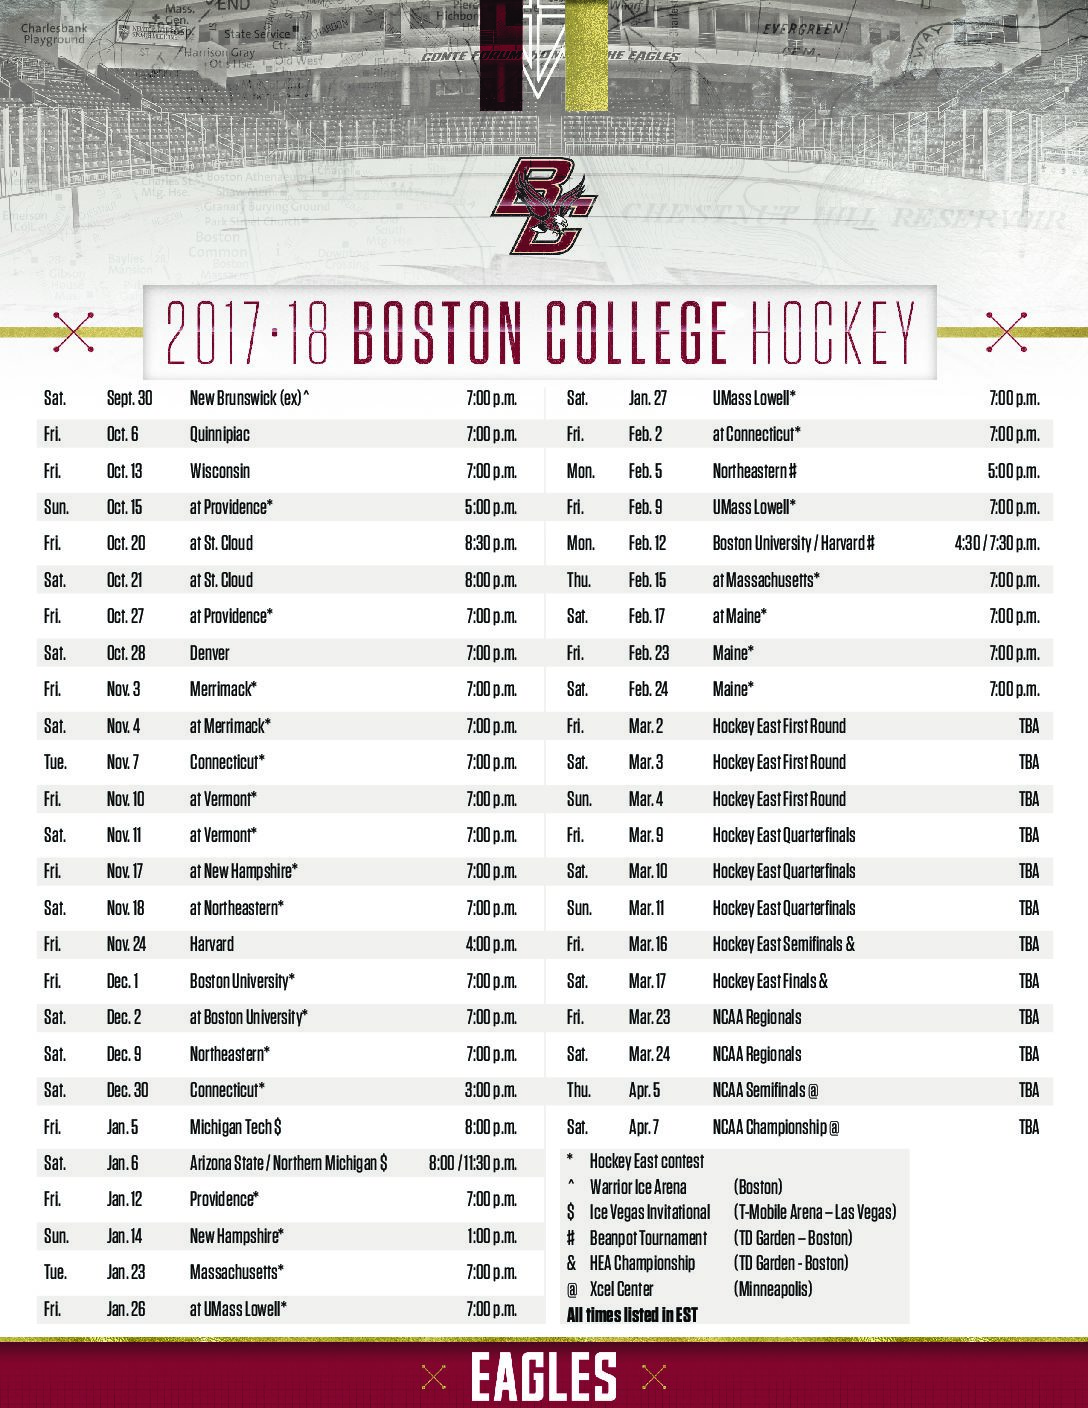 Breaking Down the 2017-18 Men's Hockey Schedule